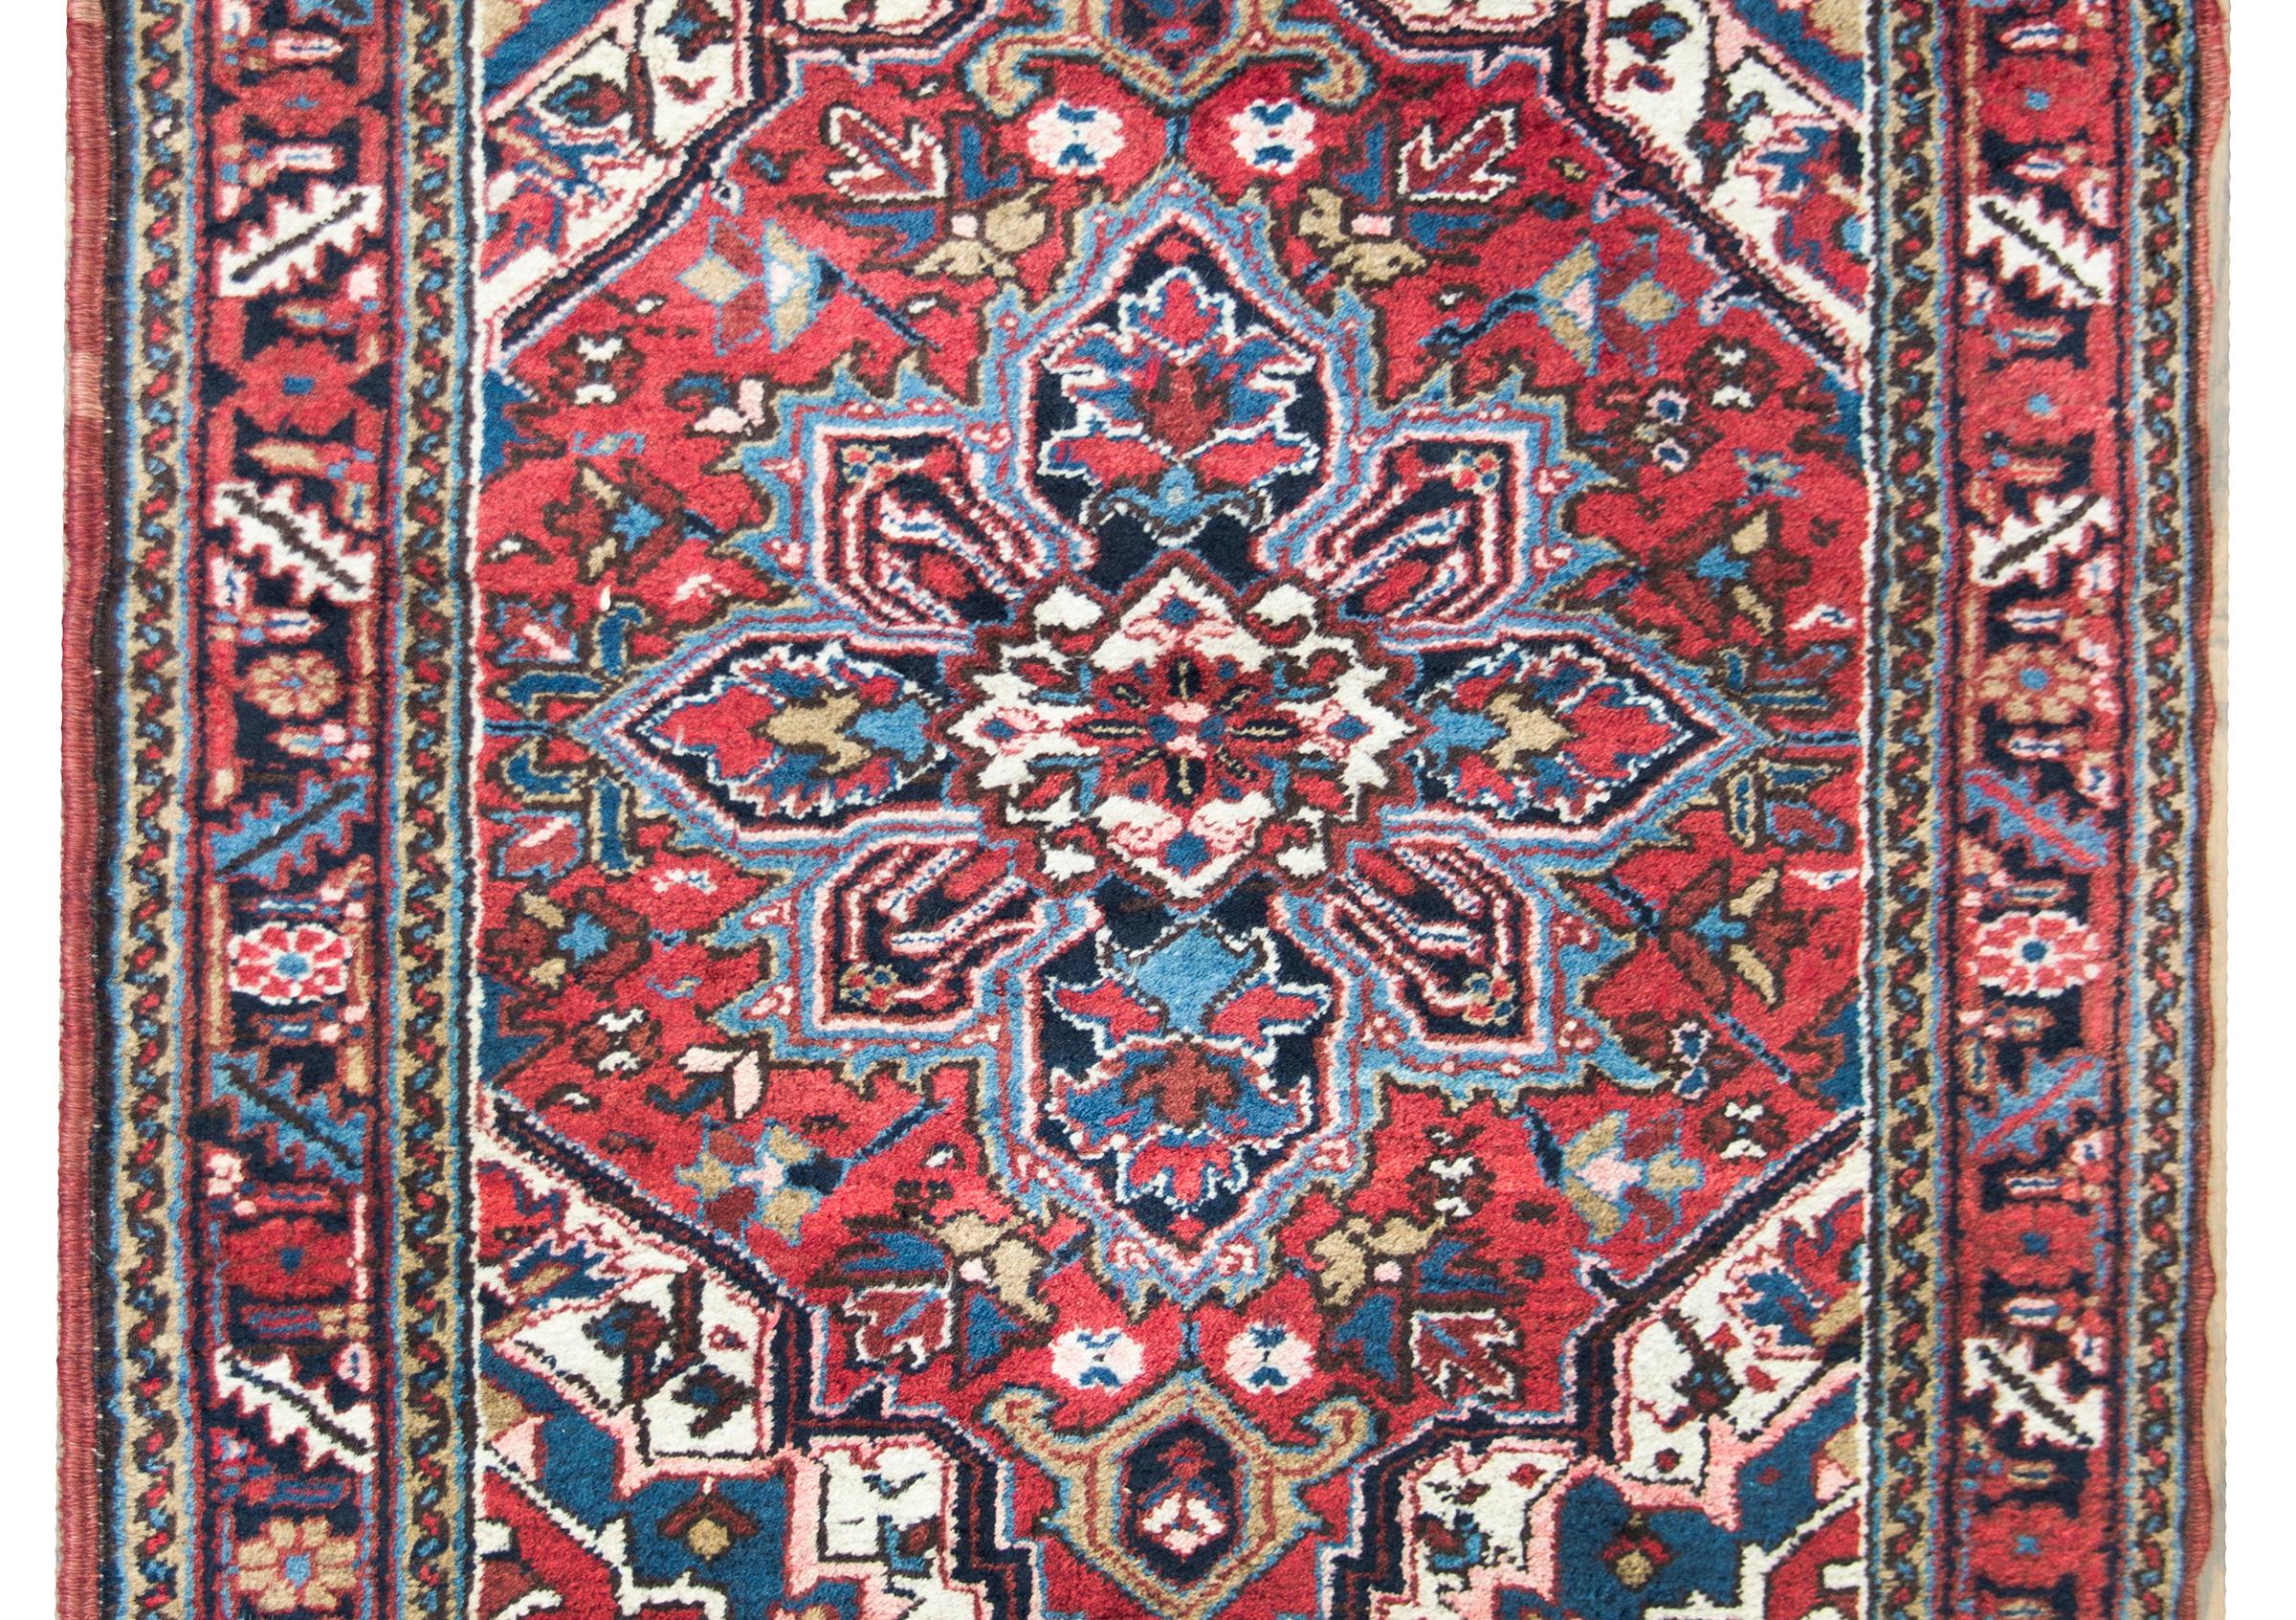 Ein schöner persischer Heriz-Teppich aus dem frühen 20. Jahrhundert mit einem traditionellen großen zentralen Blumenmedaillon inmitten eines Feldes mit weiteren Blumen und Blättern, umgeben von einem sich wiederholenden Blatt- und Blumenmuster,